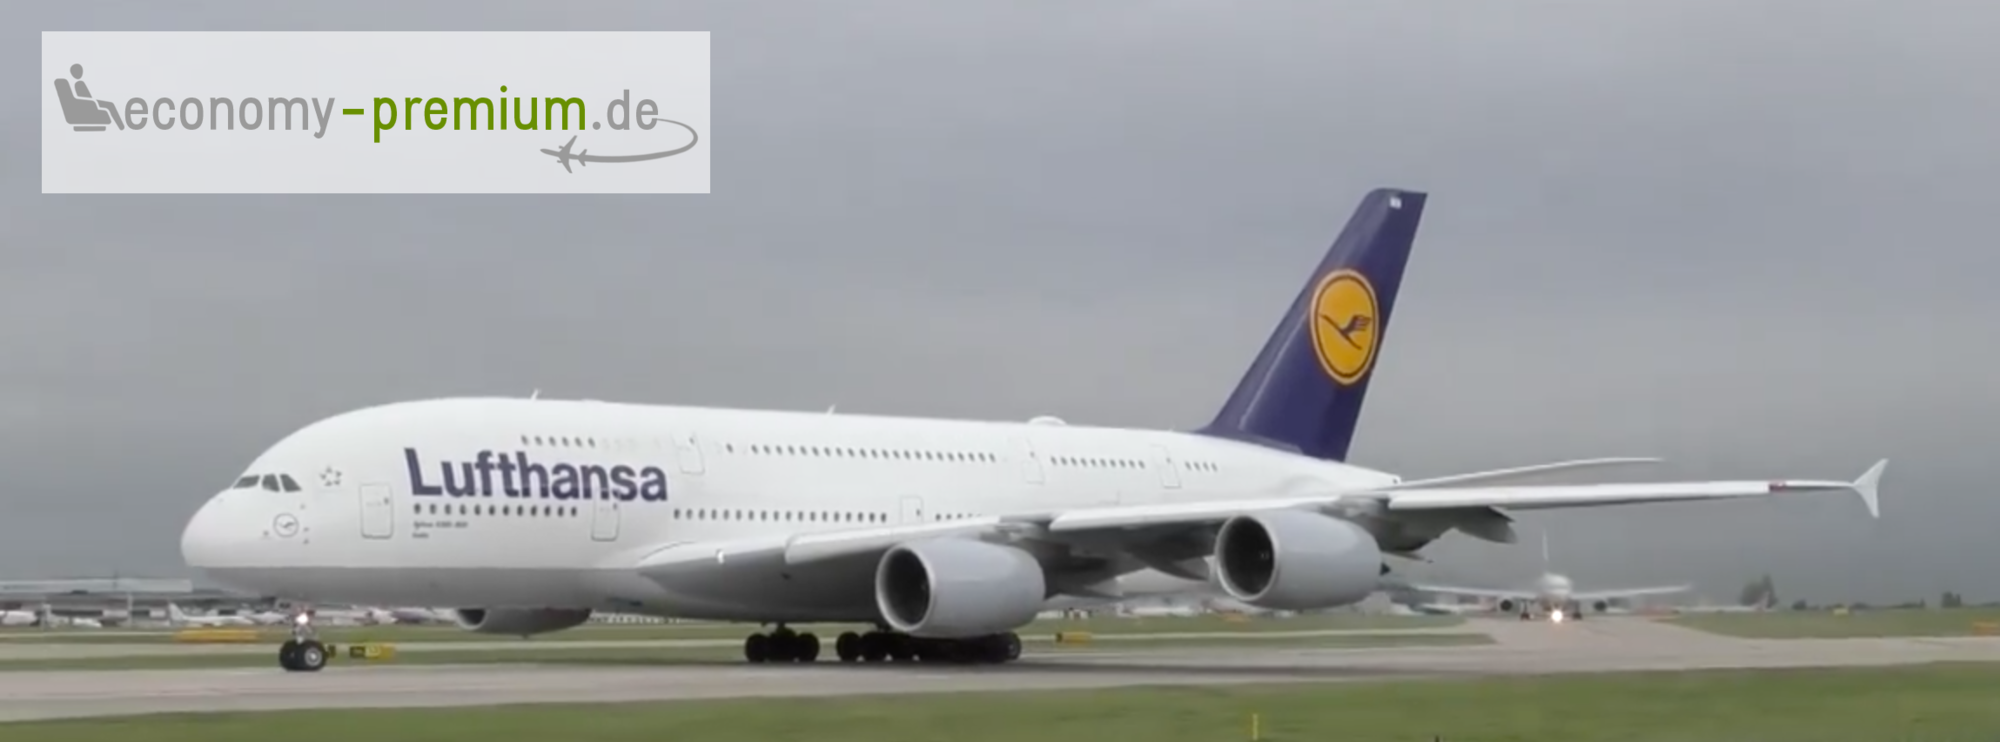 Lufthansa Premium Economy Uebersicht